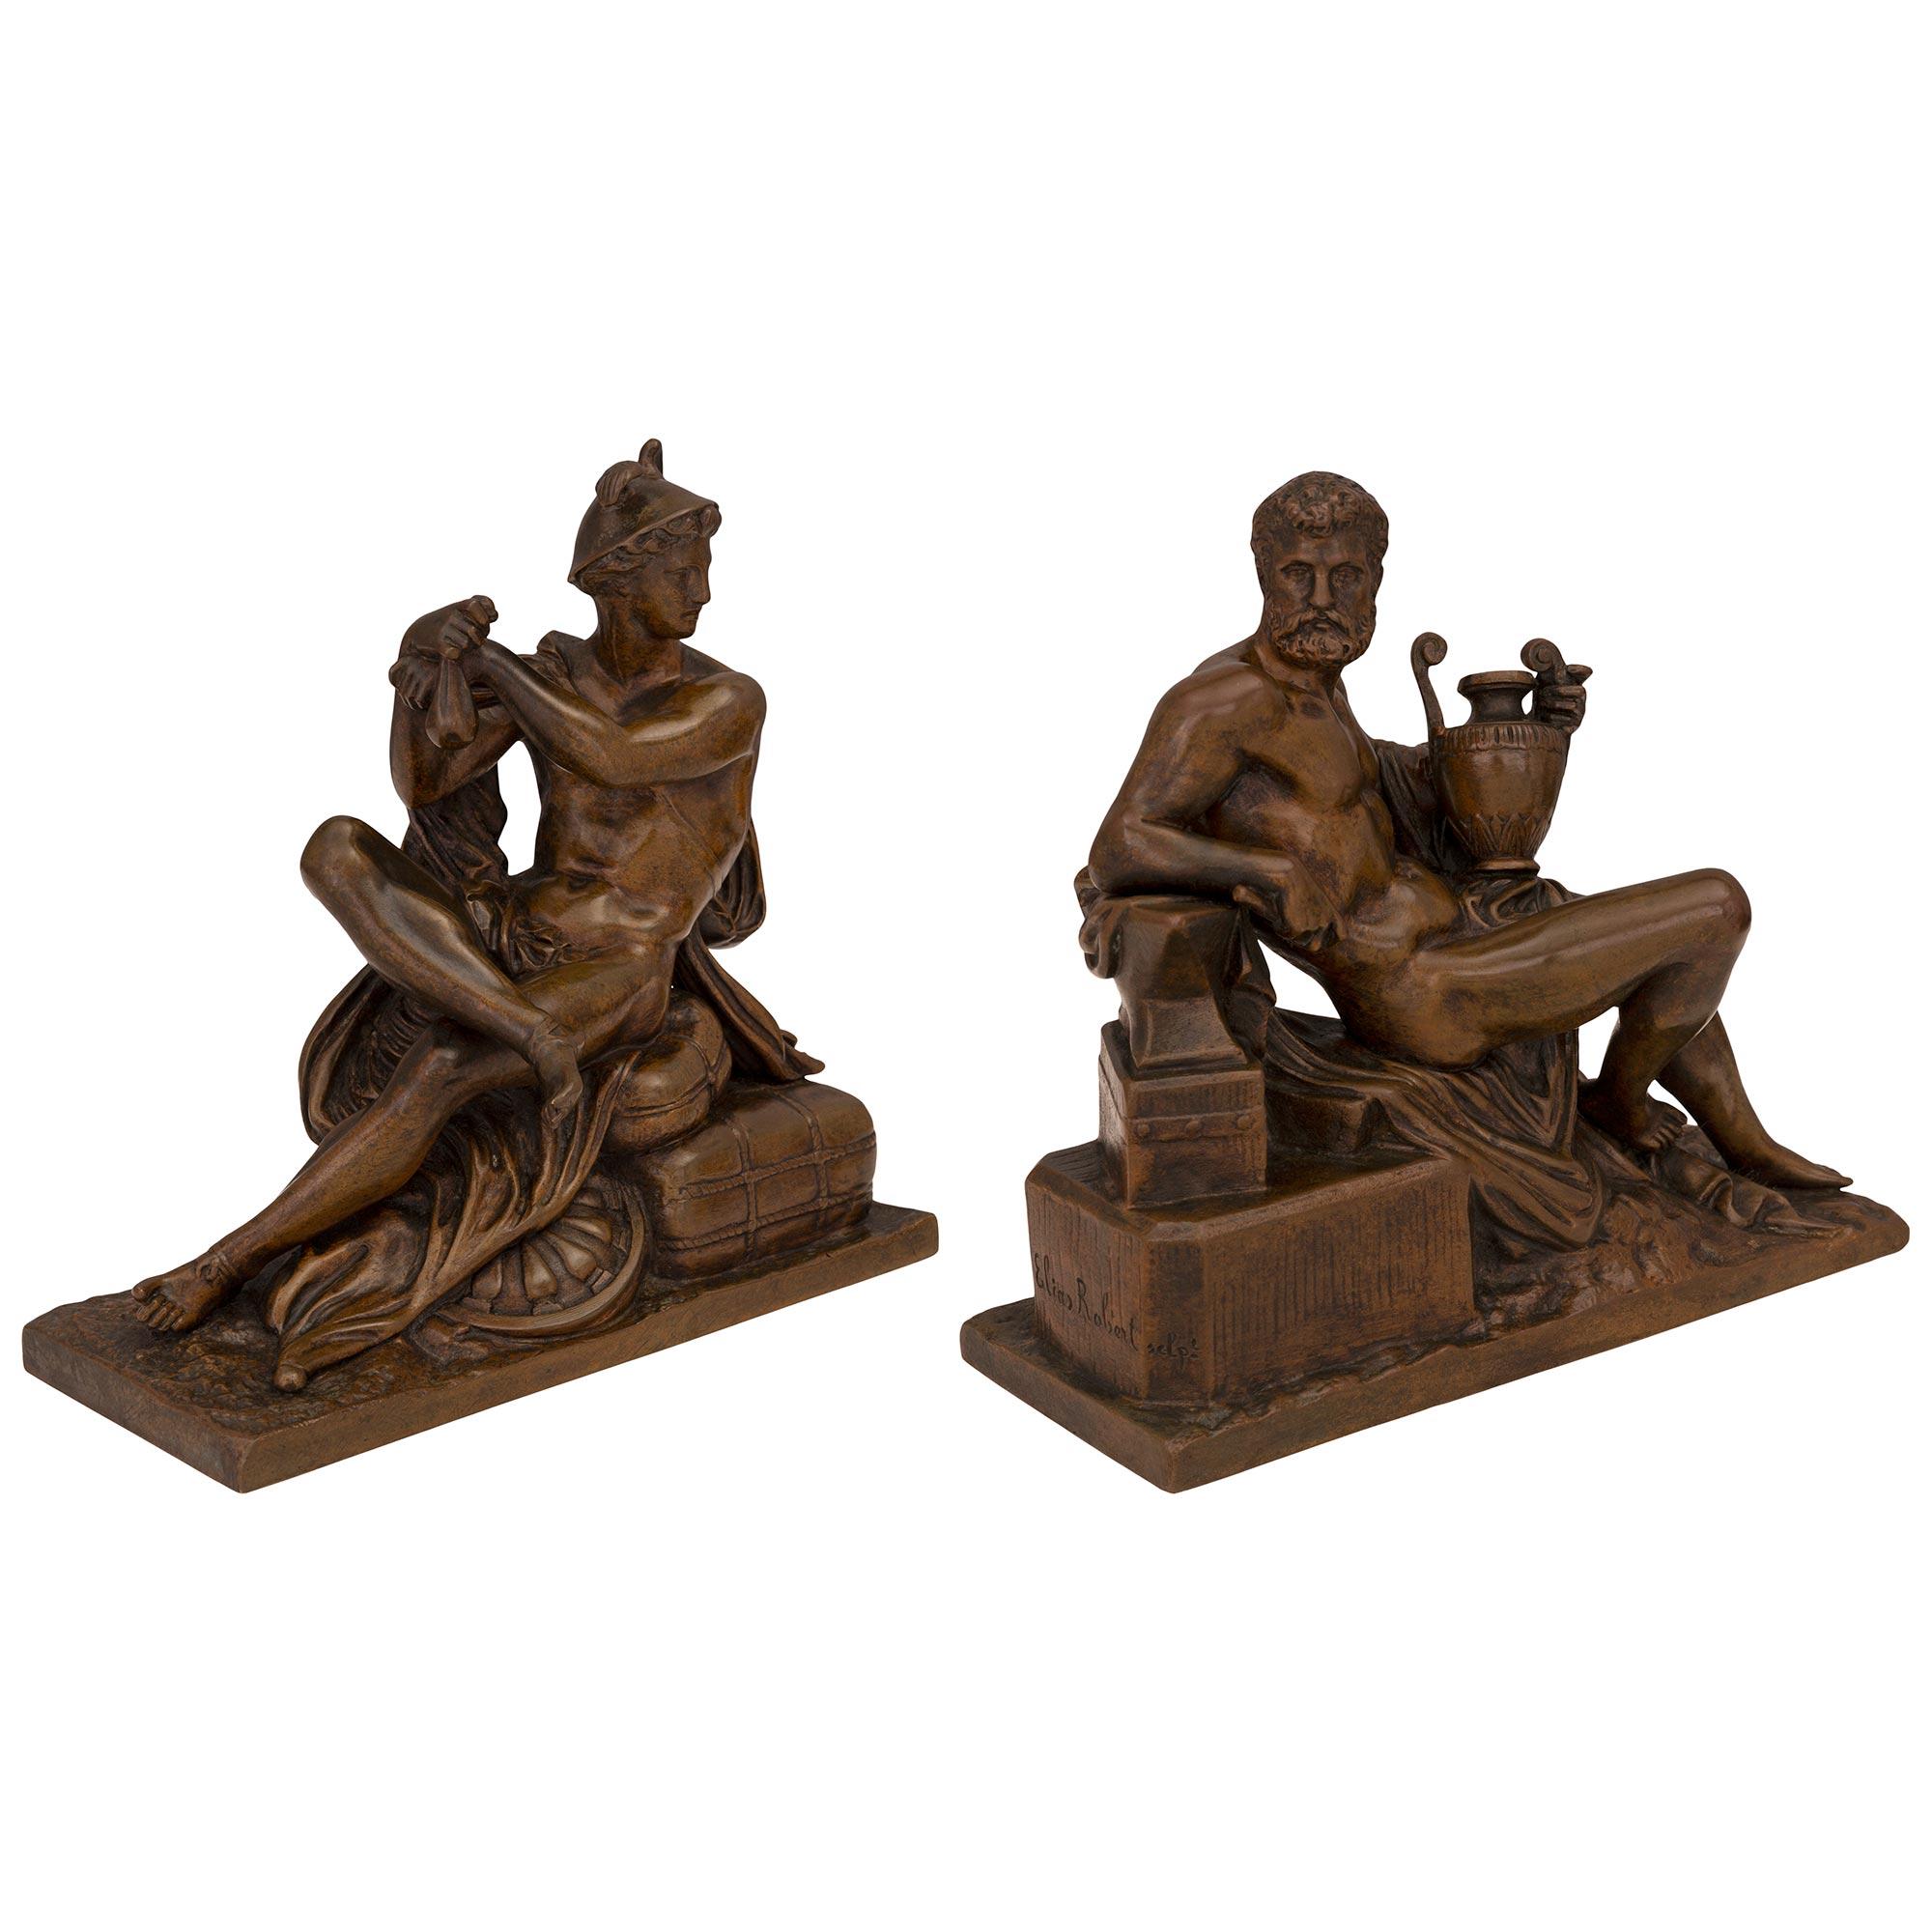 Ein prächtiges und echtes Paar französischer neoklassizistischer, patinierter Bronzestatuen des Hermes und eines Edelmannes aus dem 19. Jahrhundert, signiert und gestempelt von Susse Frères und Elias Roberts. Jede Statue steht auf einem rechteckigen